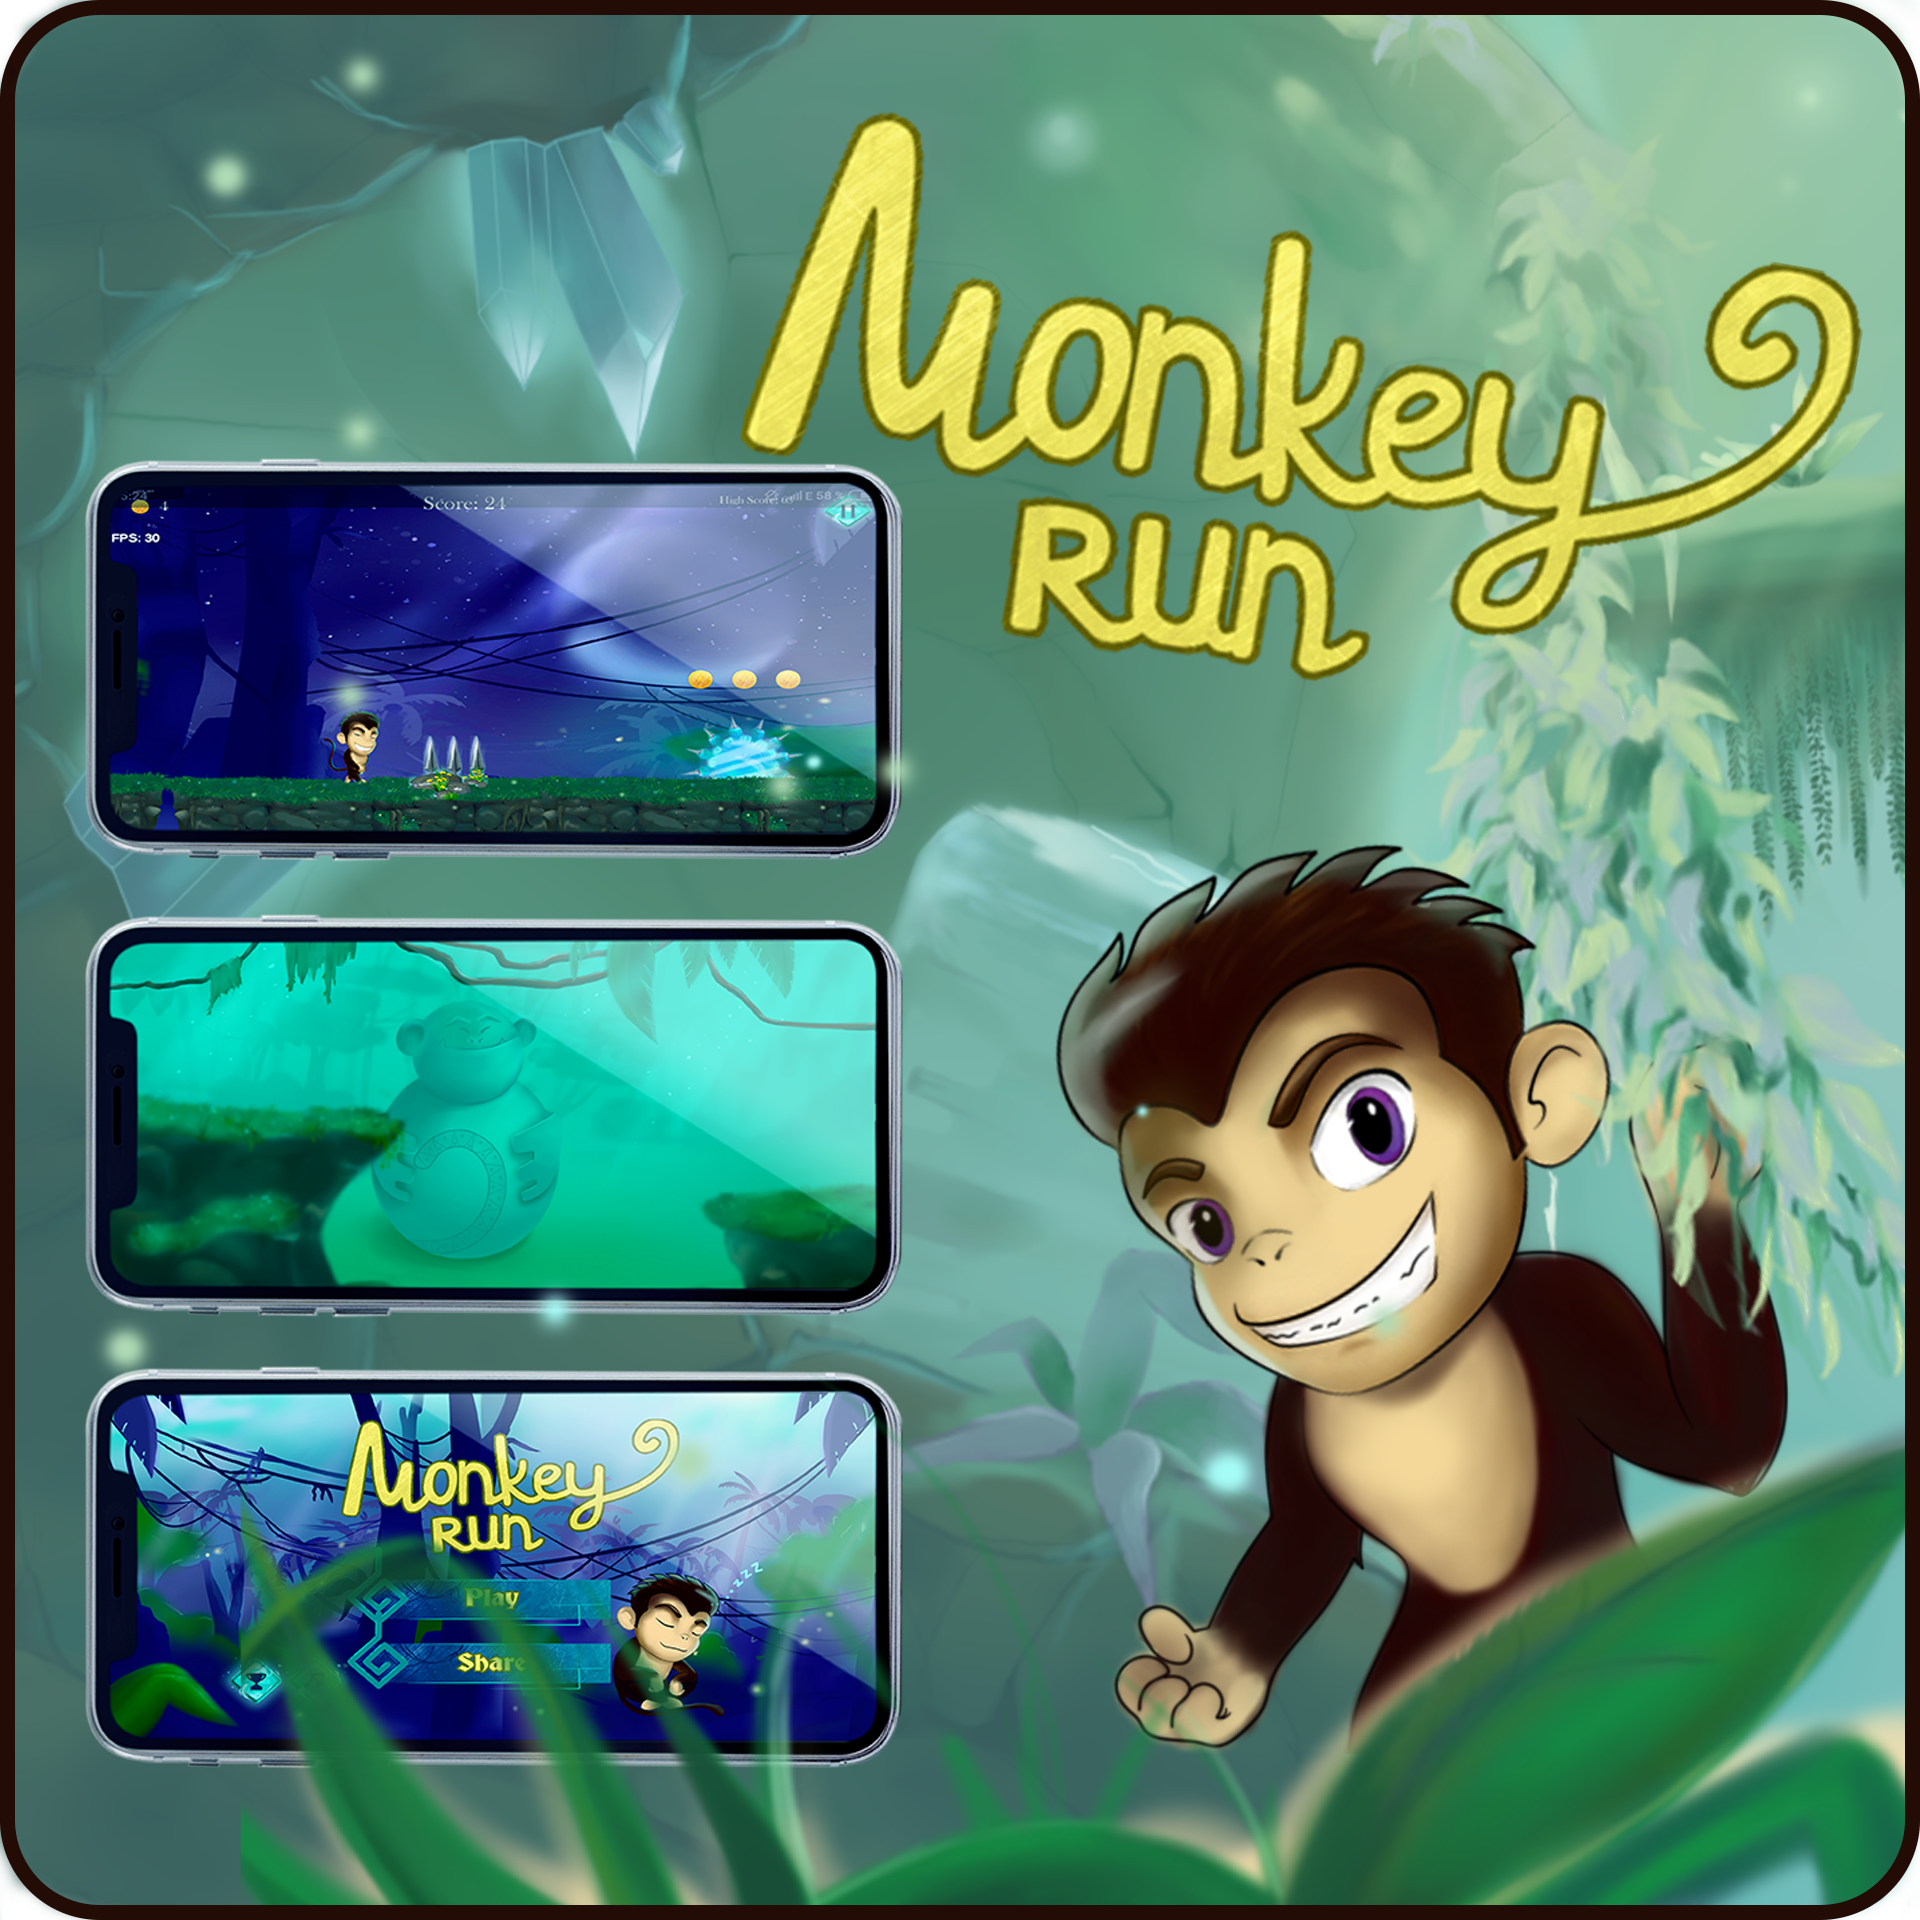 Monkey runner